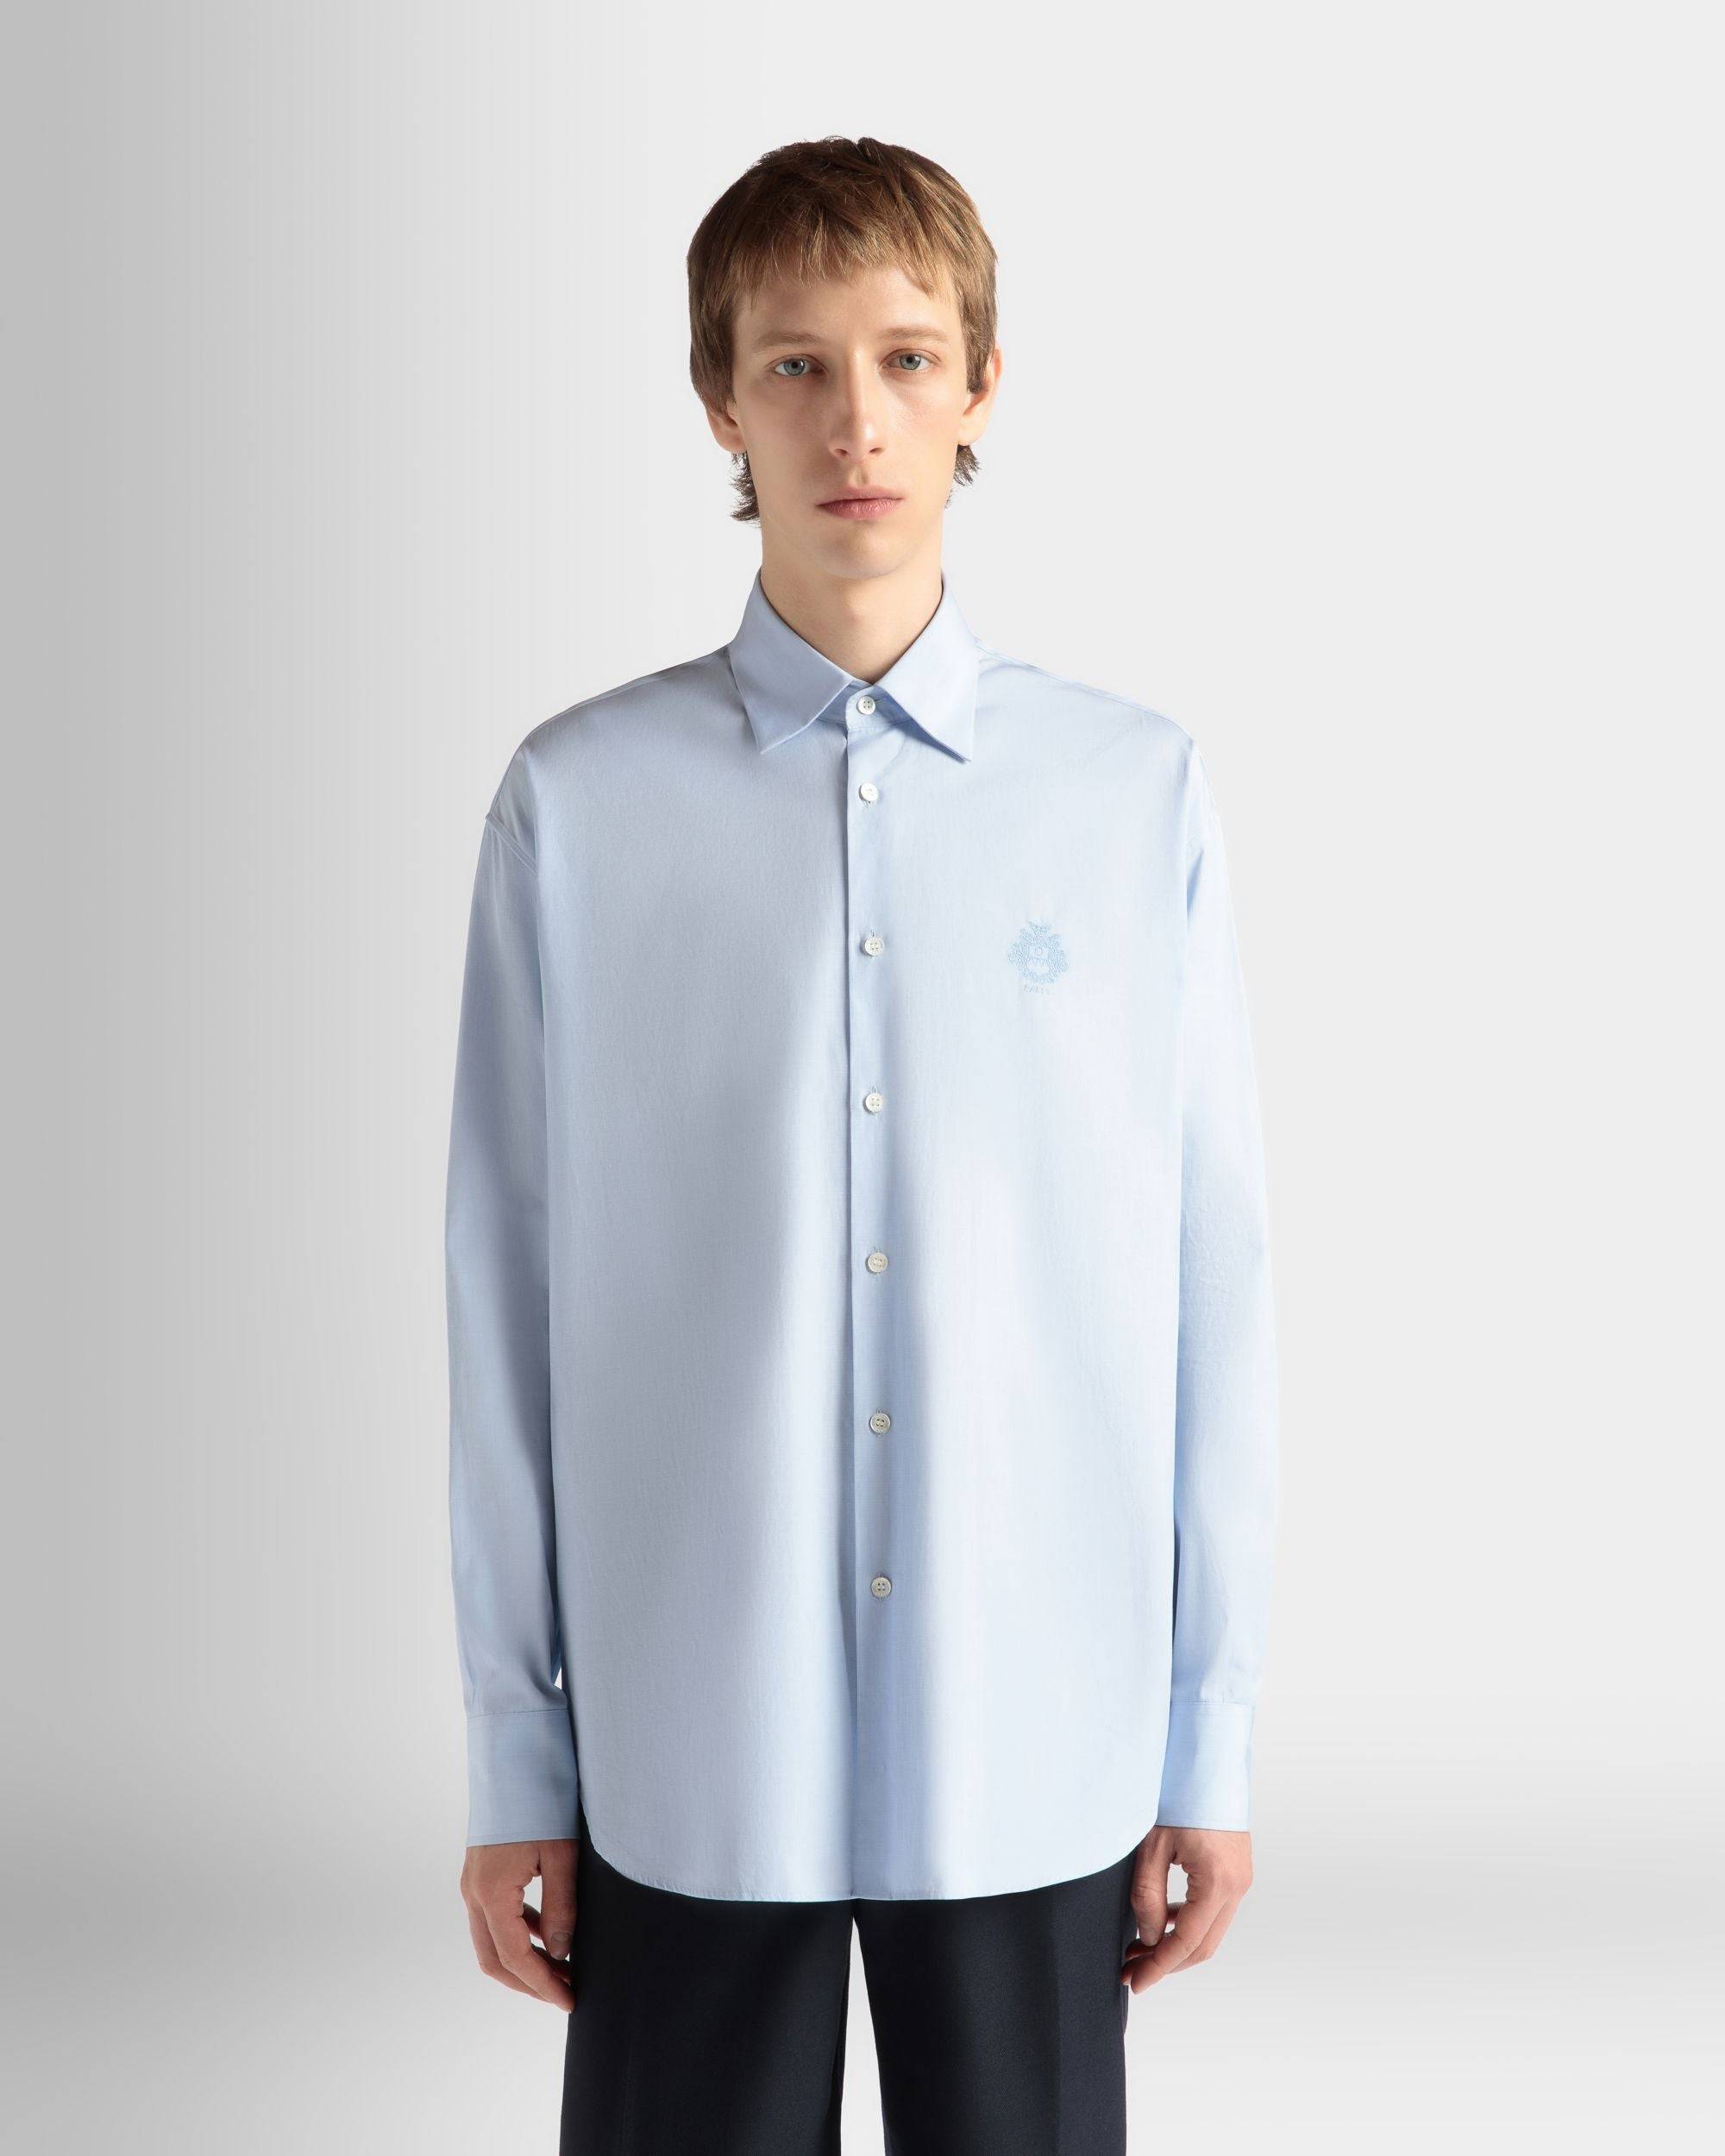 Shirt in Light Blue Cotton - Men's - Bally - 03